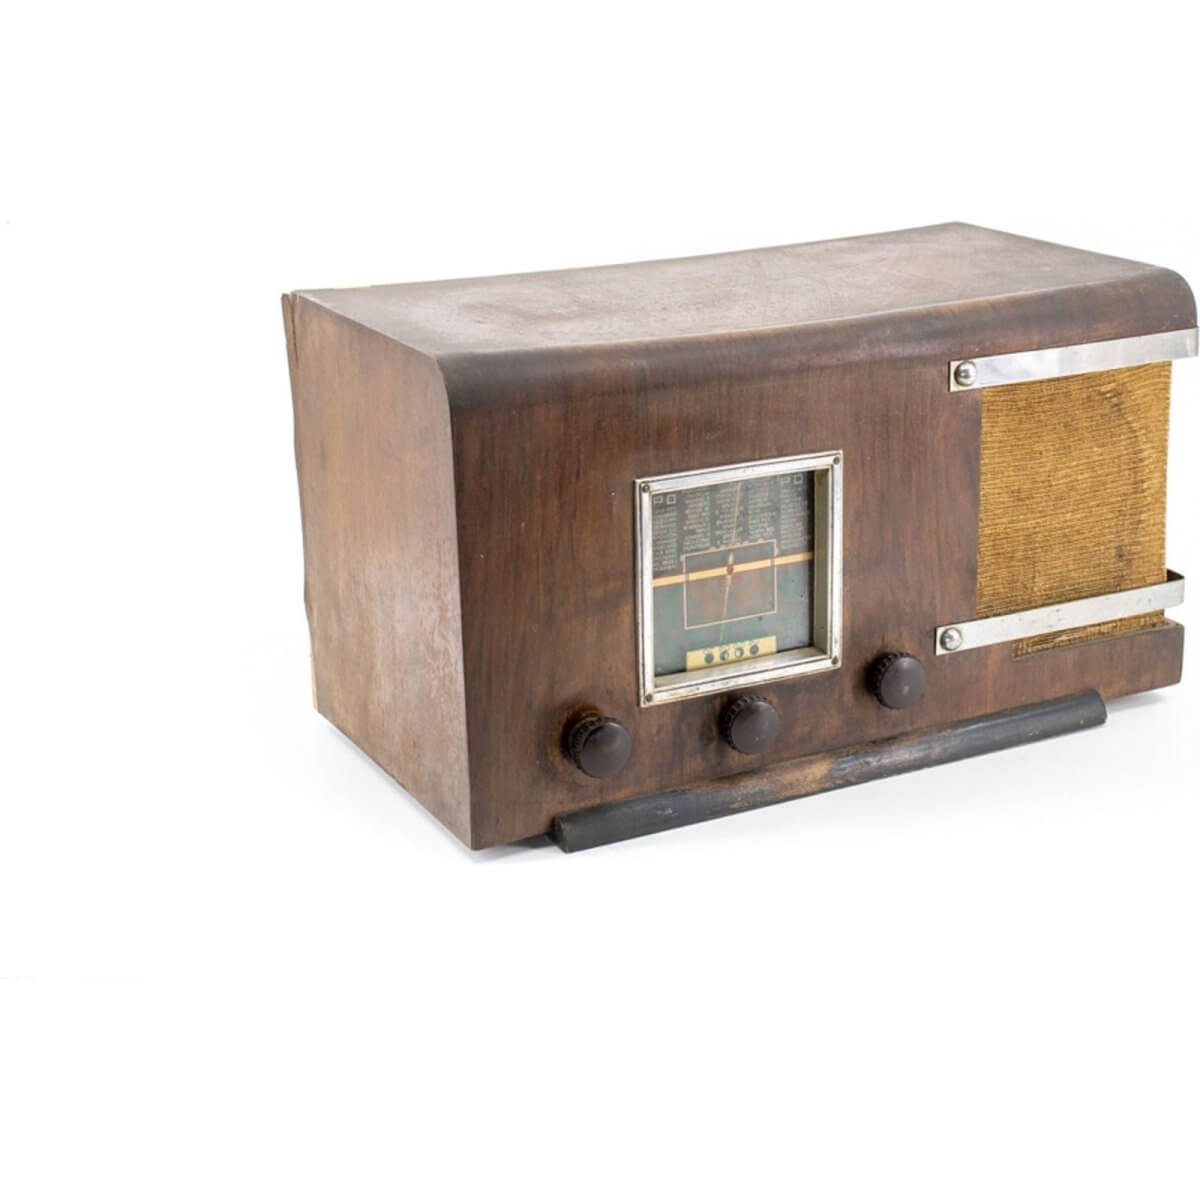 Radio Bluetooth Artisanale Vintage 40’S enceinte connectée française haut de gamme prodige radio vintage